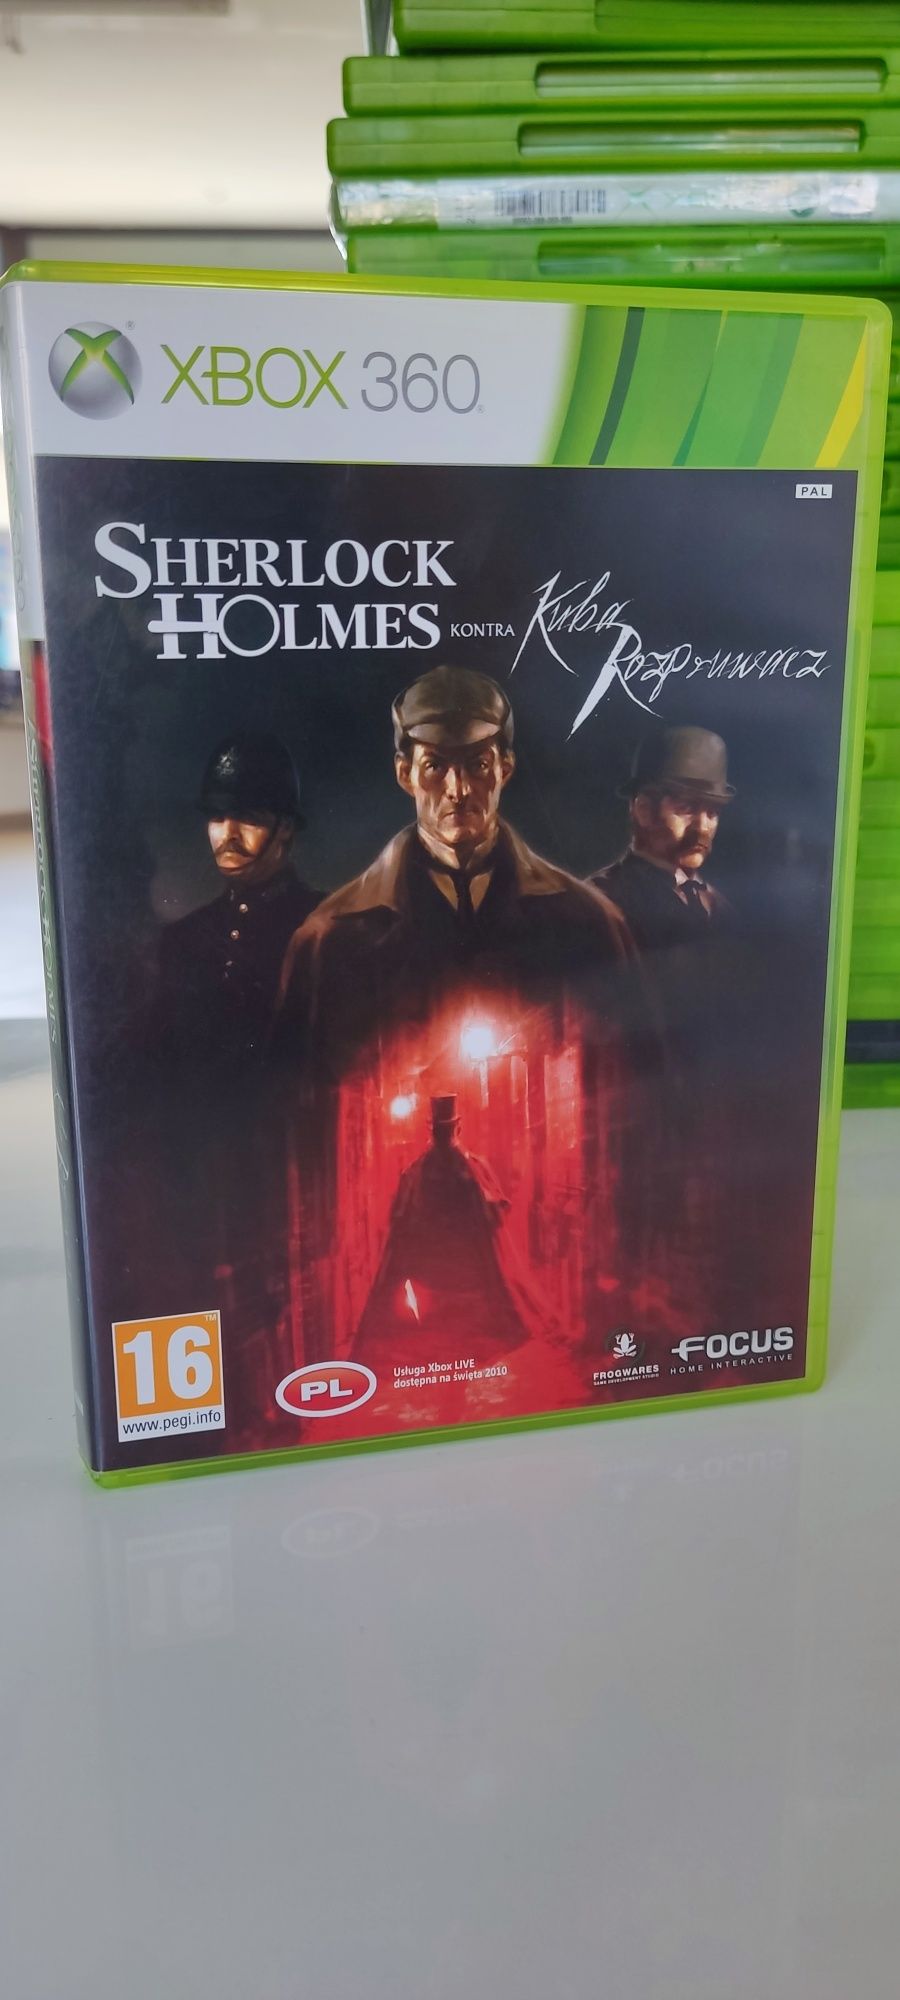 Sherlock Holmes Kontra Kuba Rozpruwacz Xbox 360